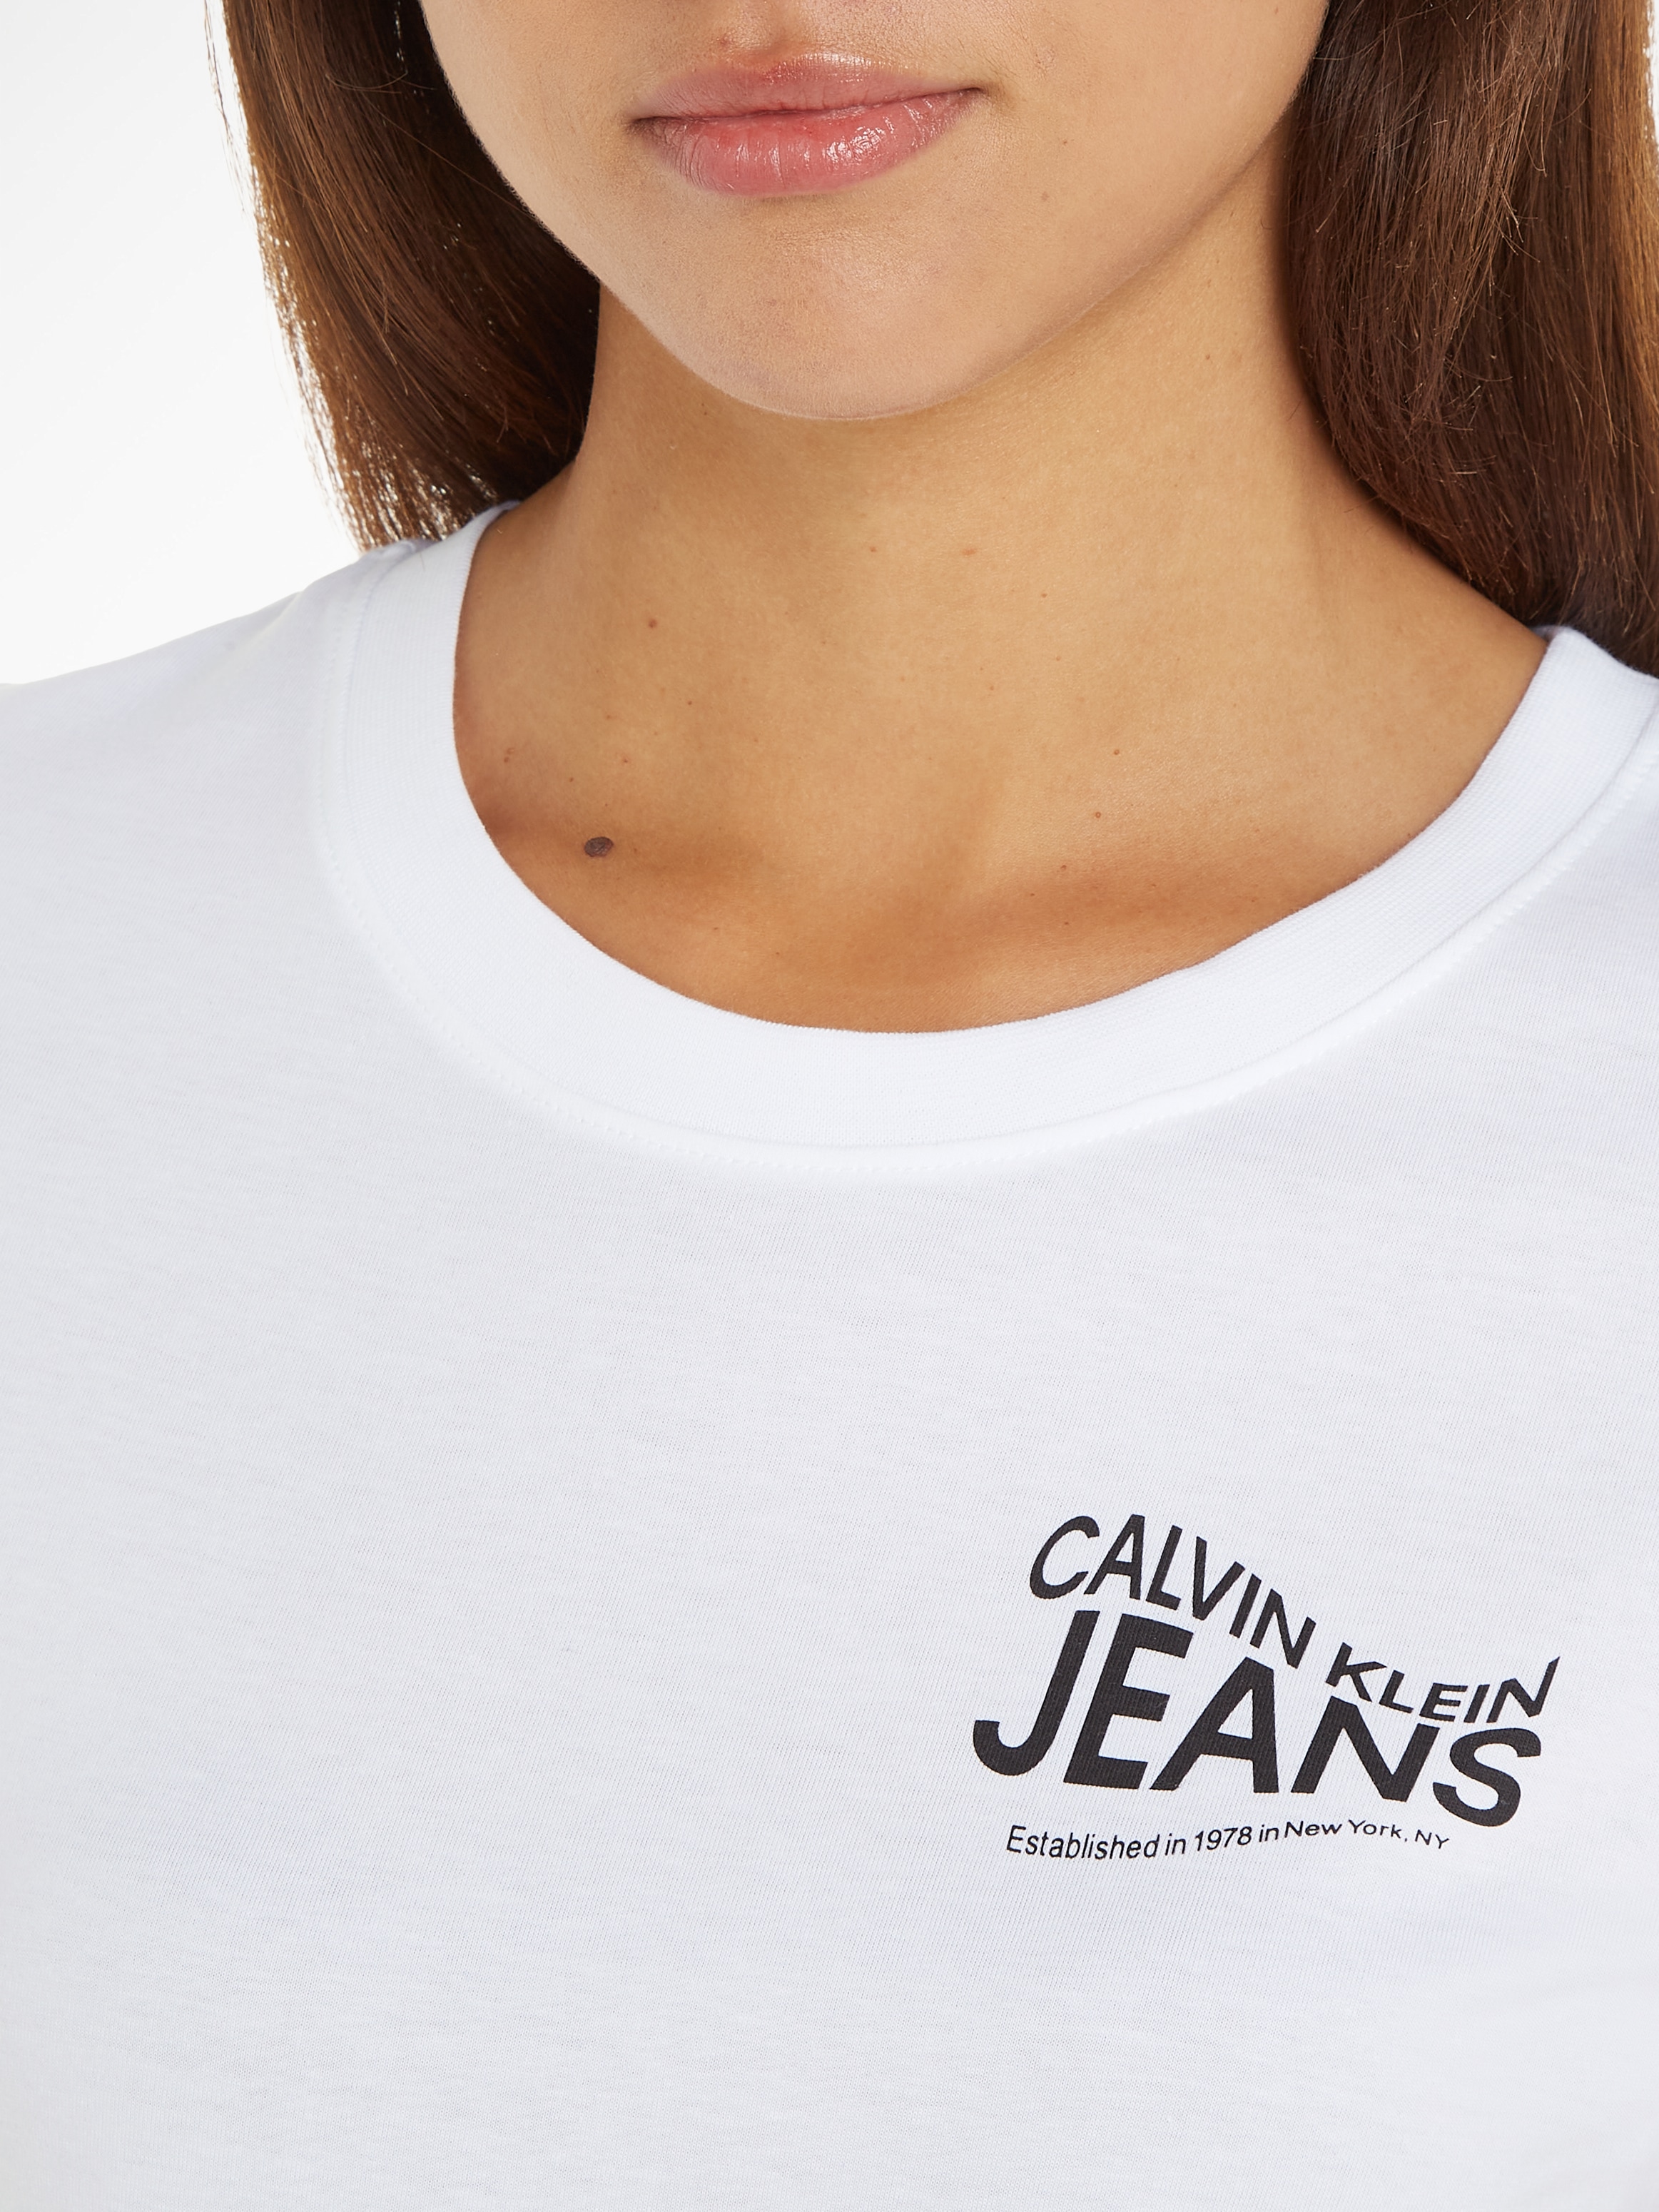 ♕ Calvin Klein bestellen versandkostenfrei T-Shirt Jeans